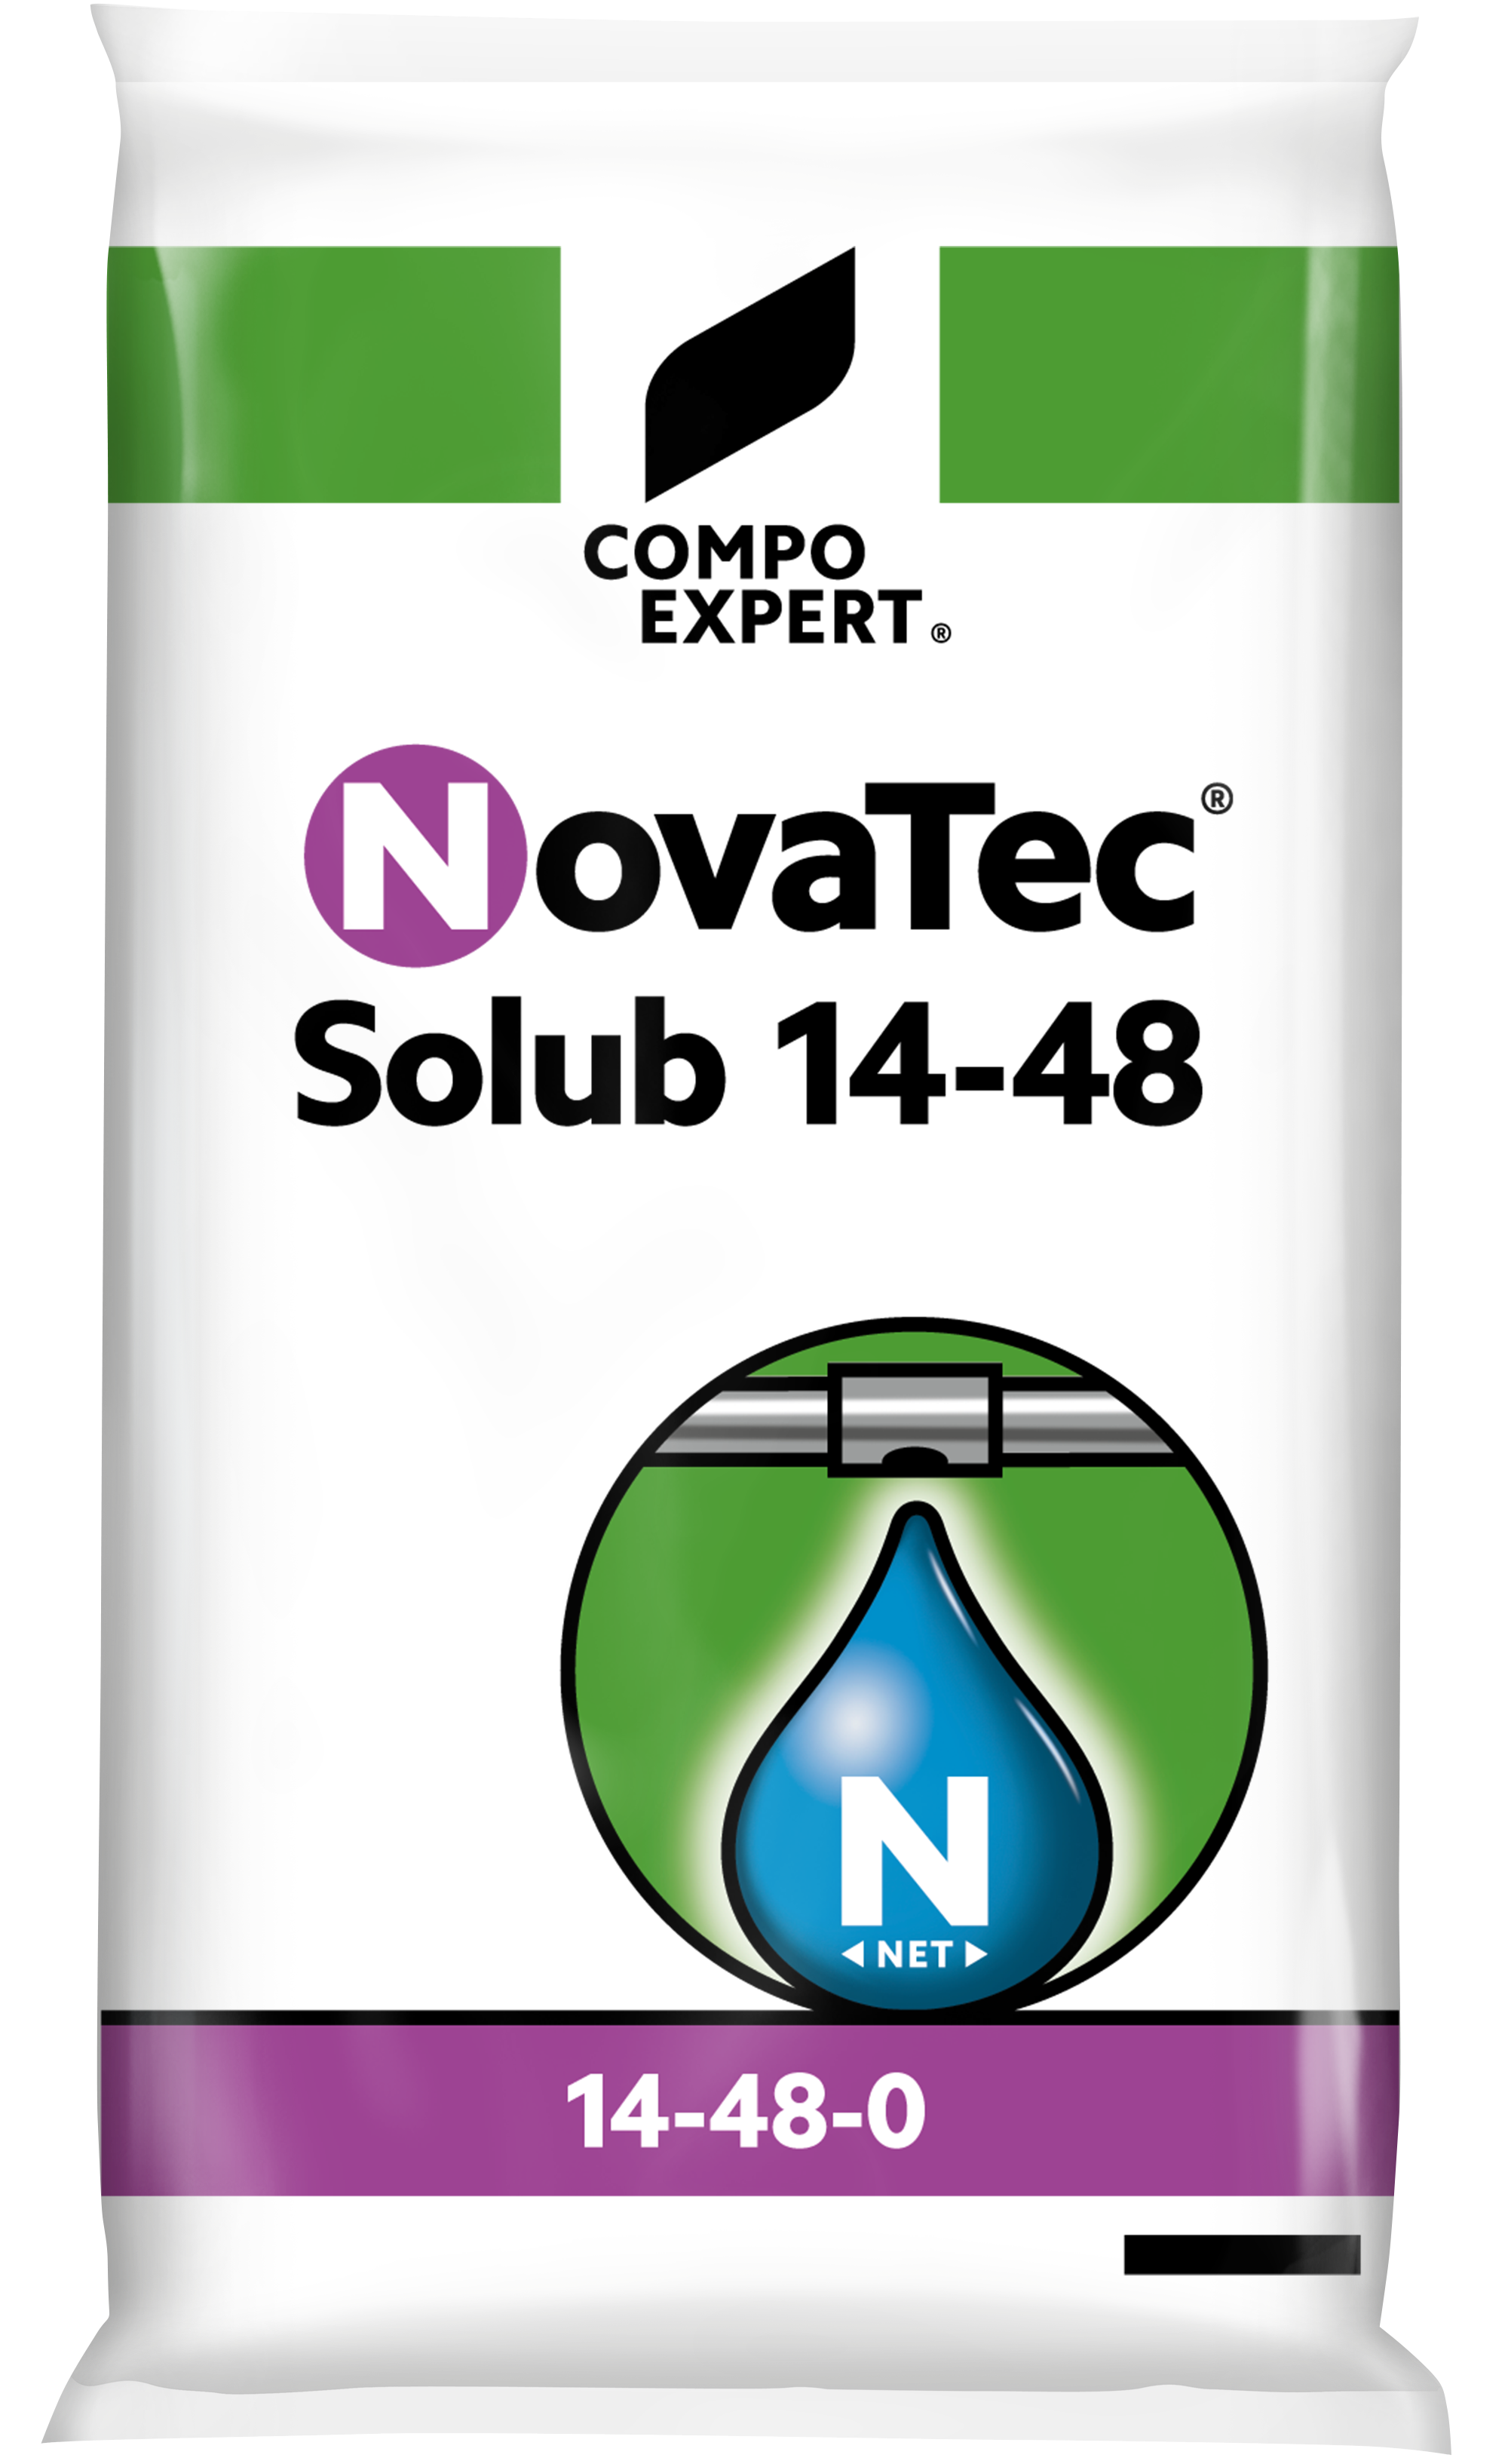 NovaTec® Solub 14-48 COMPO EXPERT